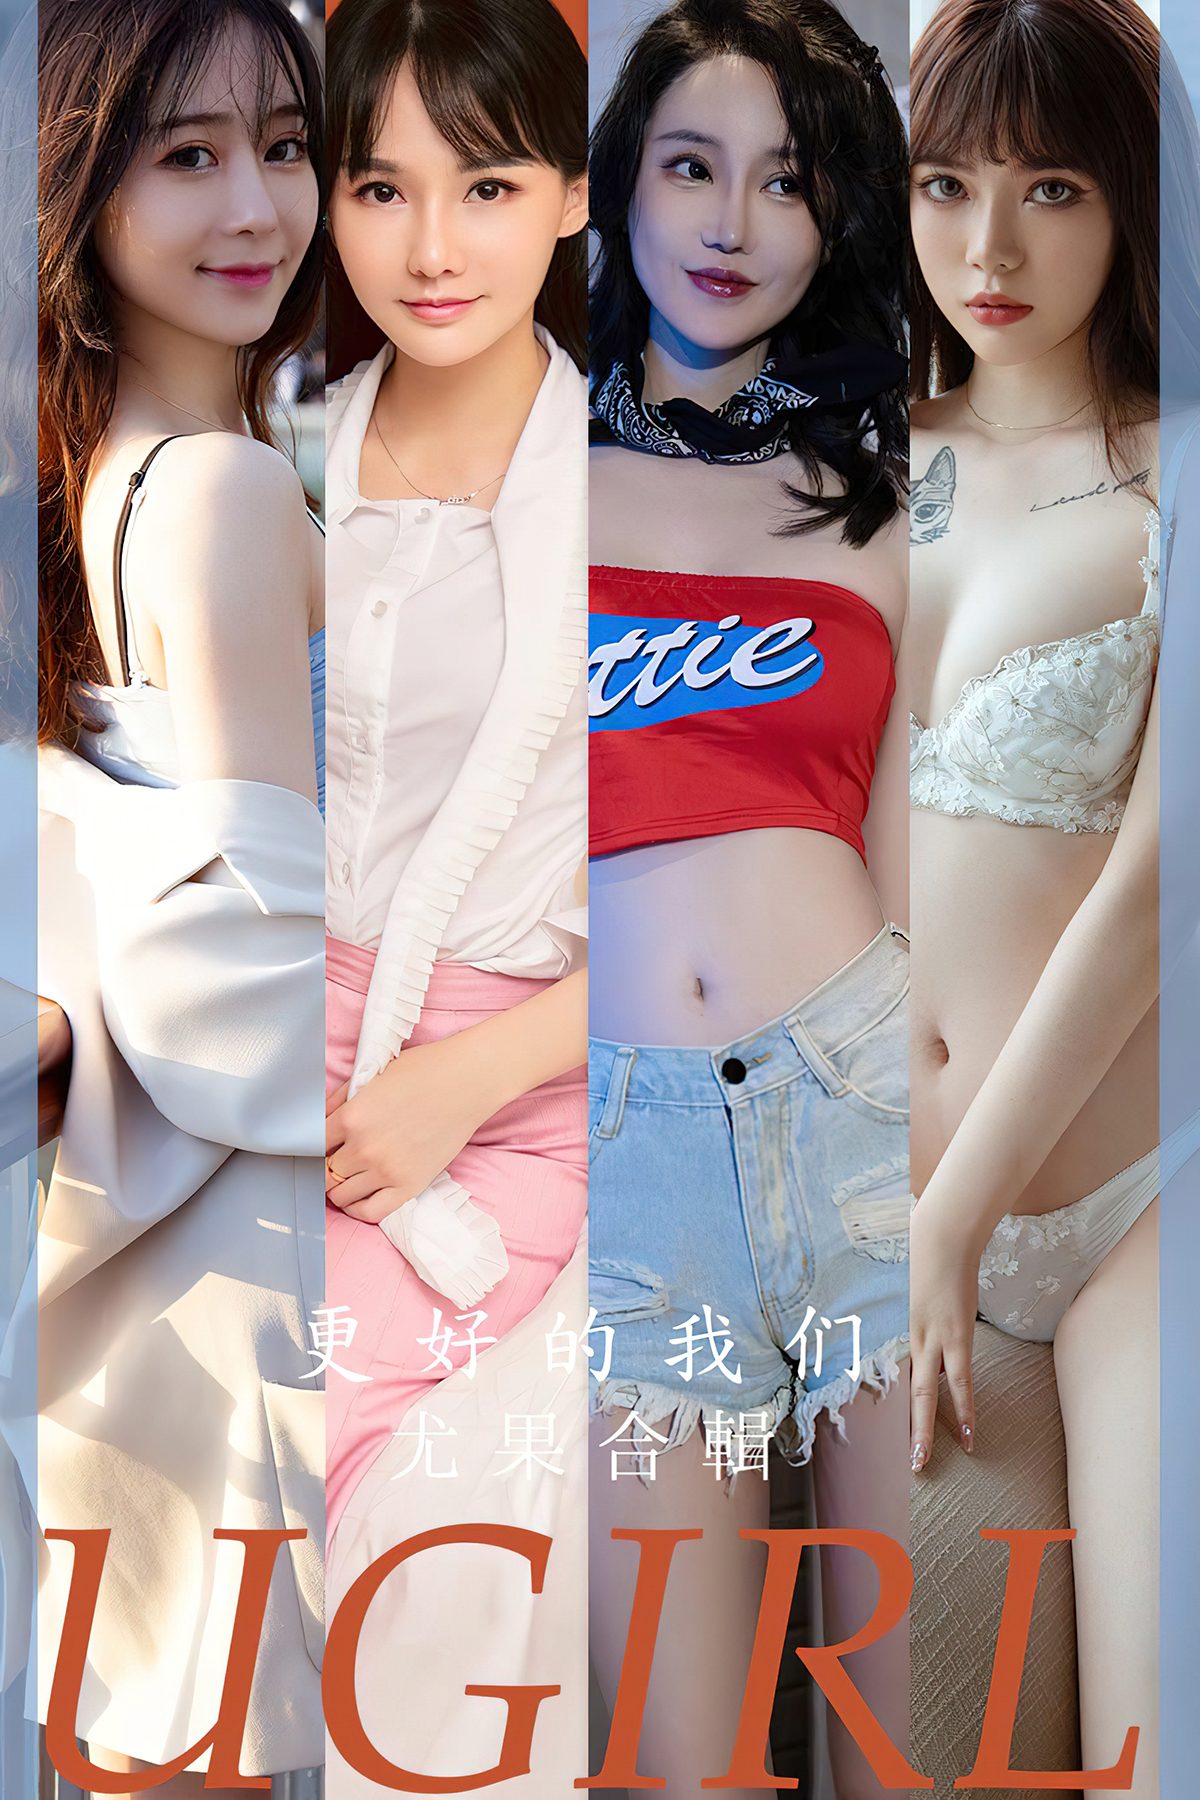 Ugirls App尤果圈 No.2638 Yugo Compilation